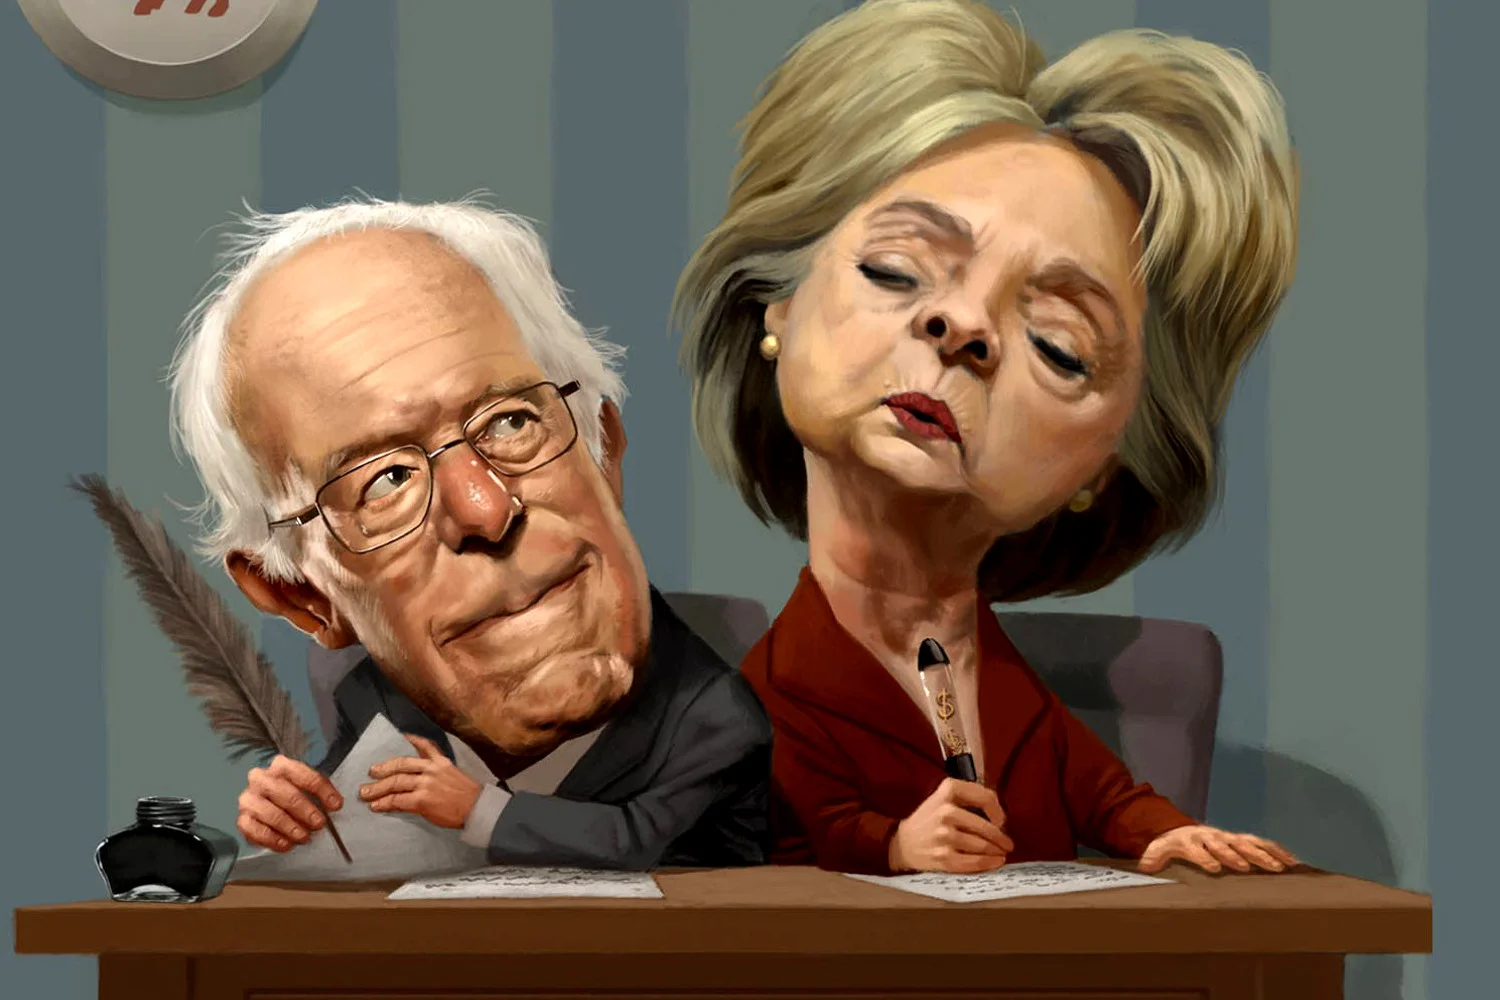 Hillary Bernie caricature 1500 crop 1